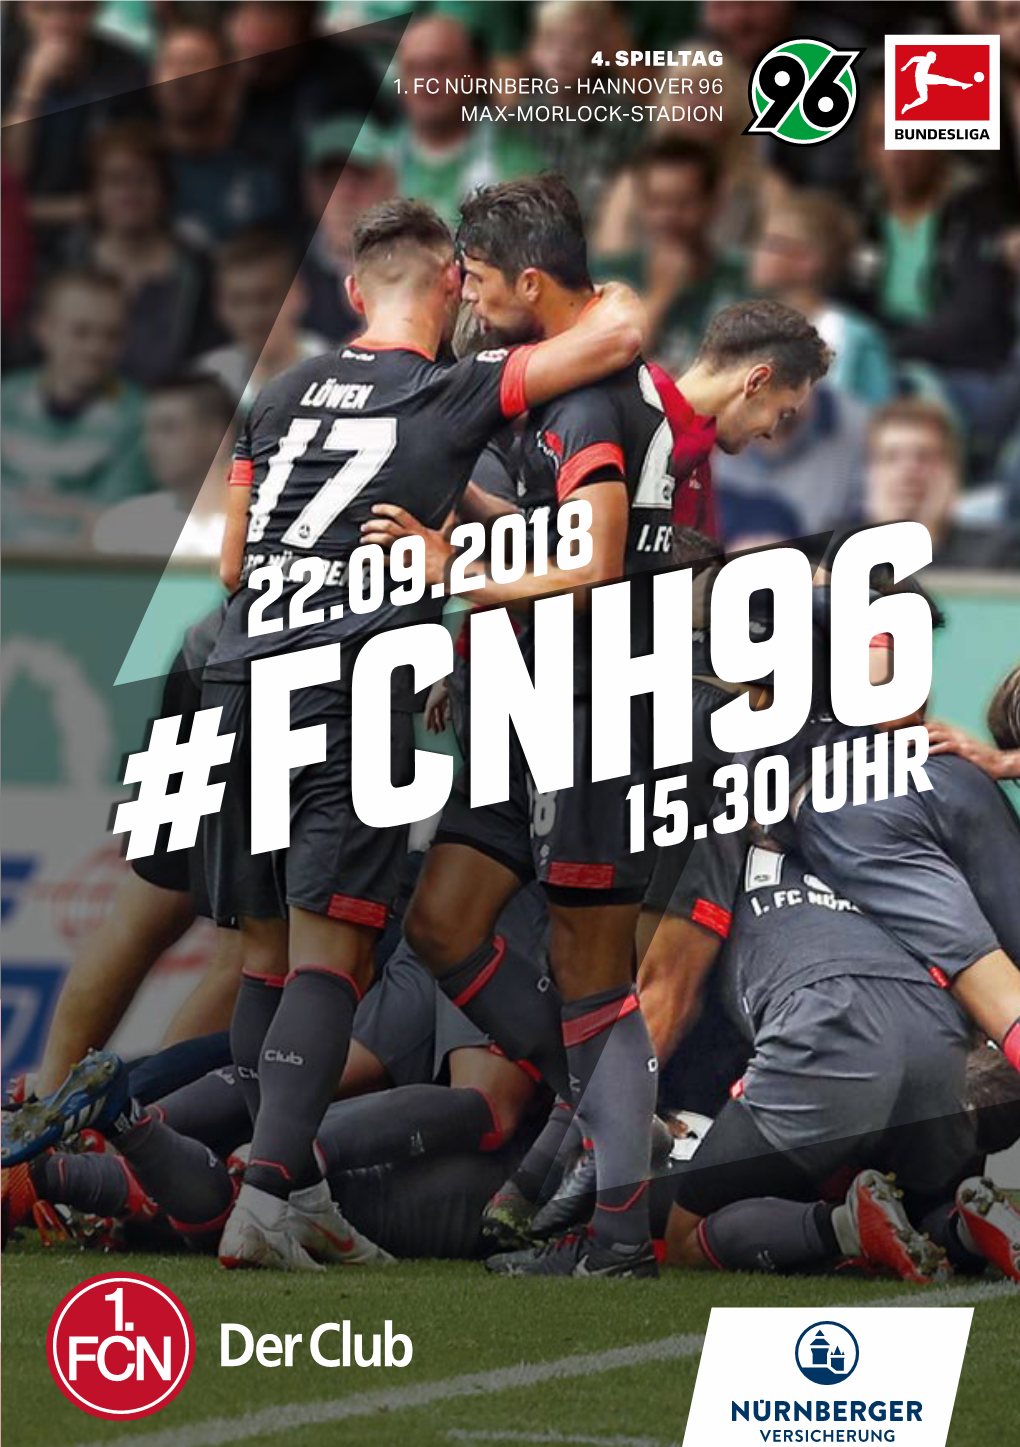 Zum Heimspiel Gegen Hannover 96 Am Samstag, 22.09.18